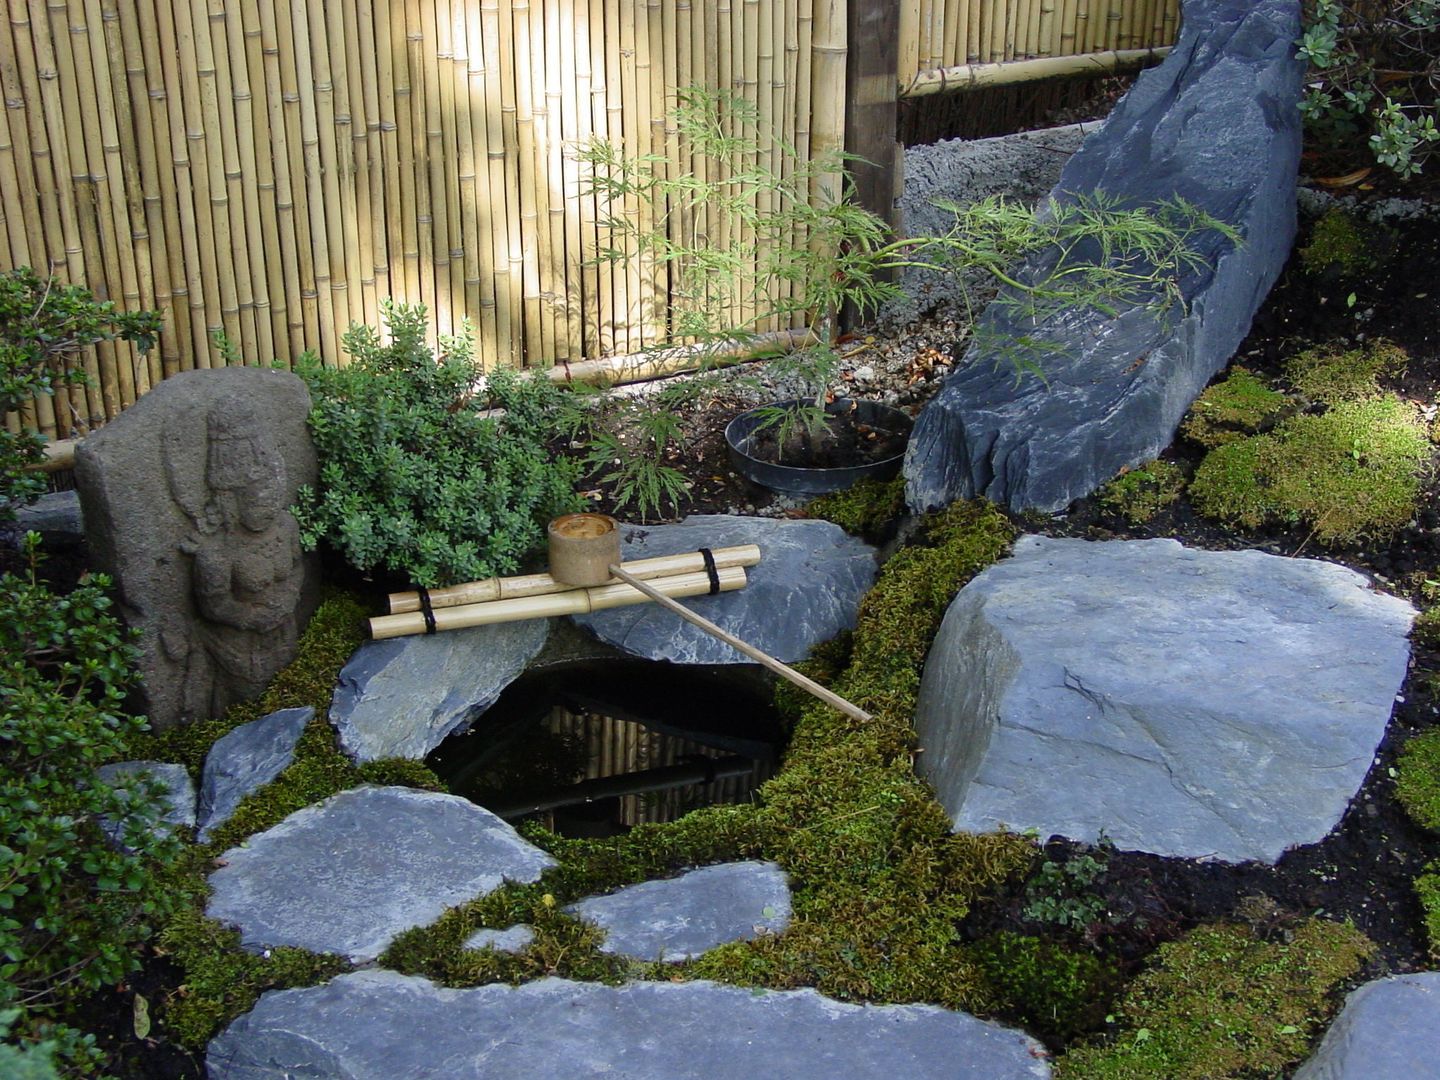 Wasser im Garten, Natur-Teiche, Schwimm-Teiche, Wasserfälle, Bachläufe, Tsukubai, japan-garten-kultur japan-garten-kultur アジア風 庭